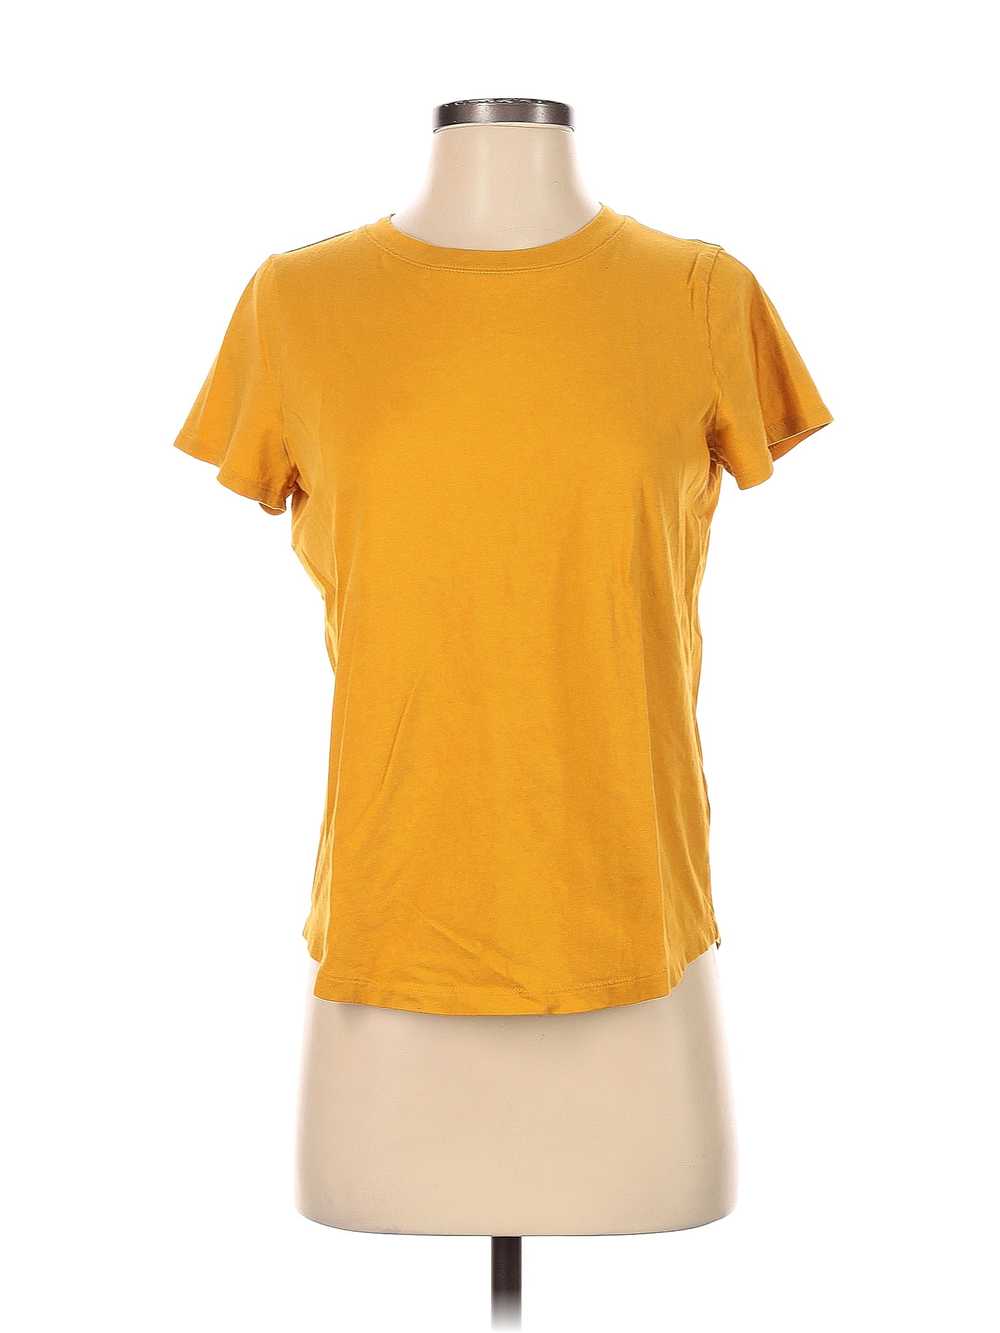 Madewell Women Yellow Short Sleeve T-Shirt S - image 1